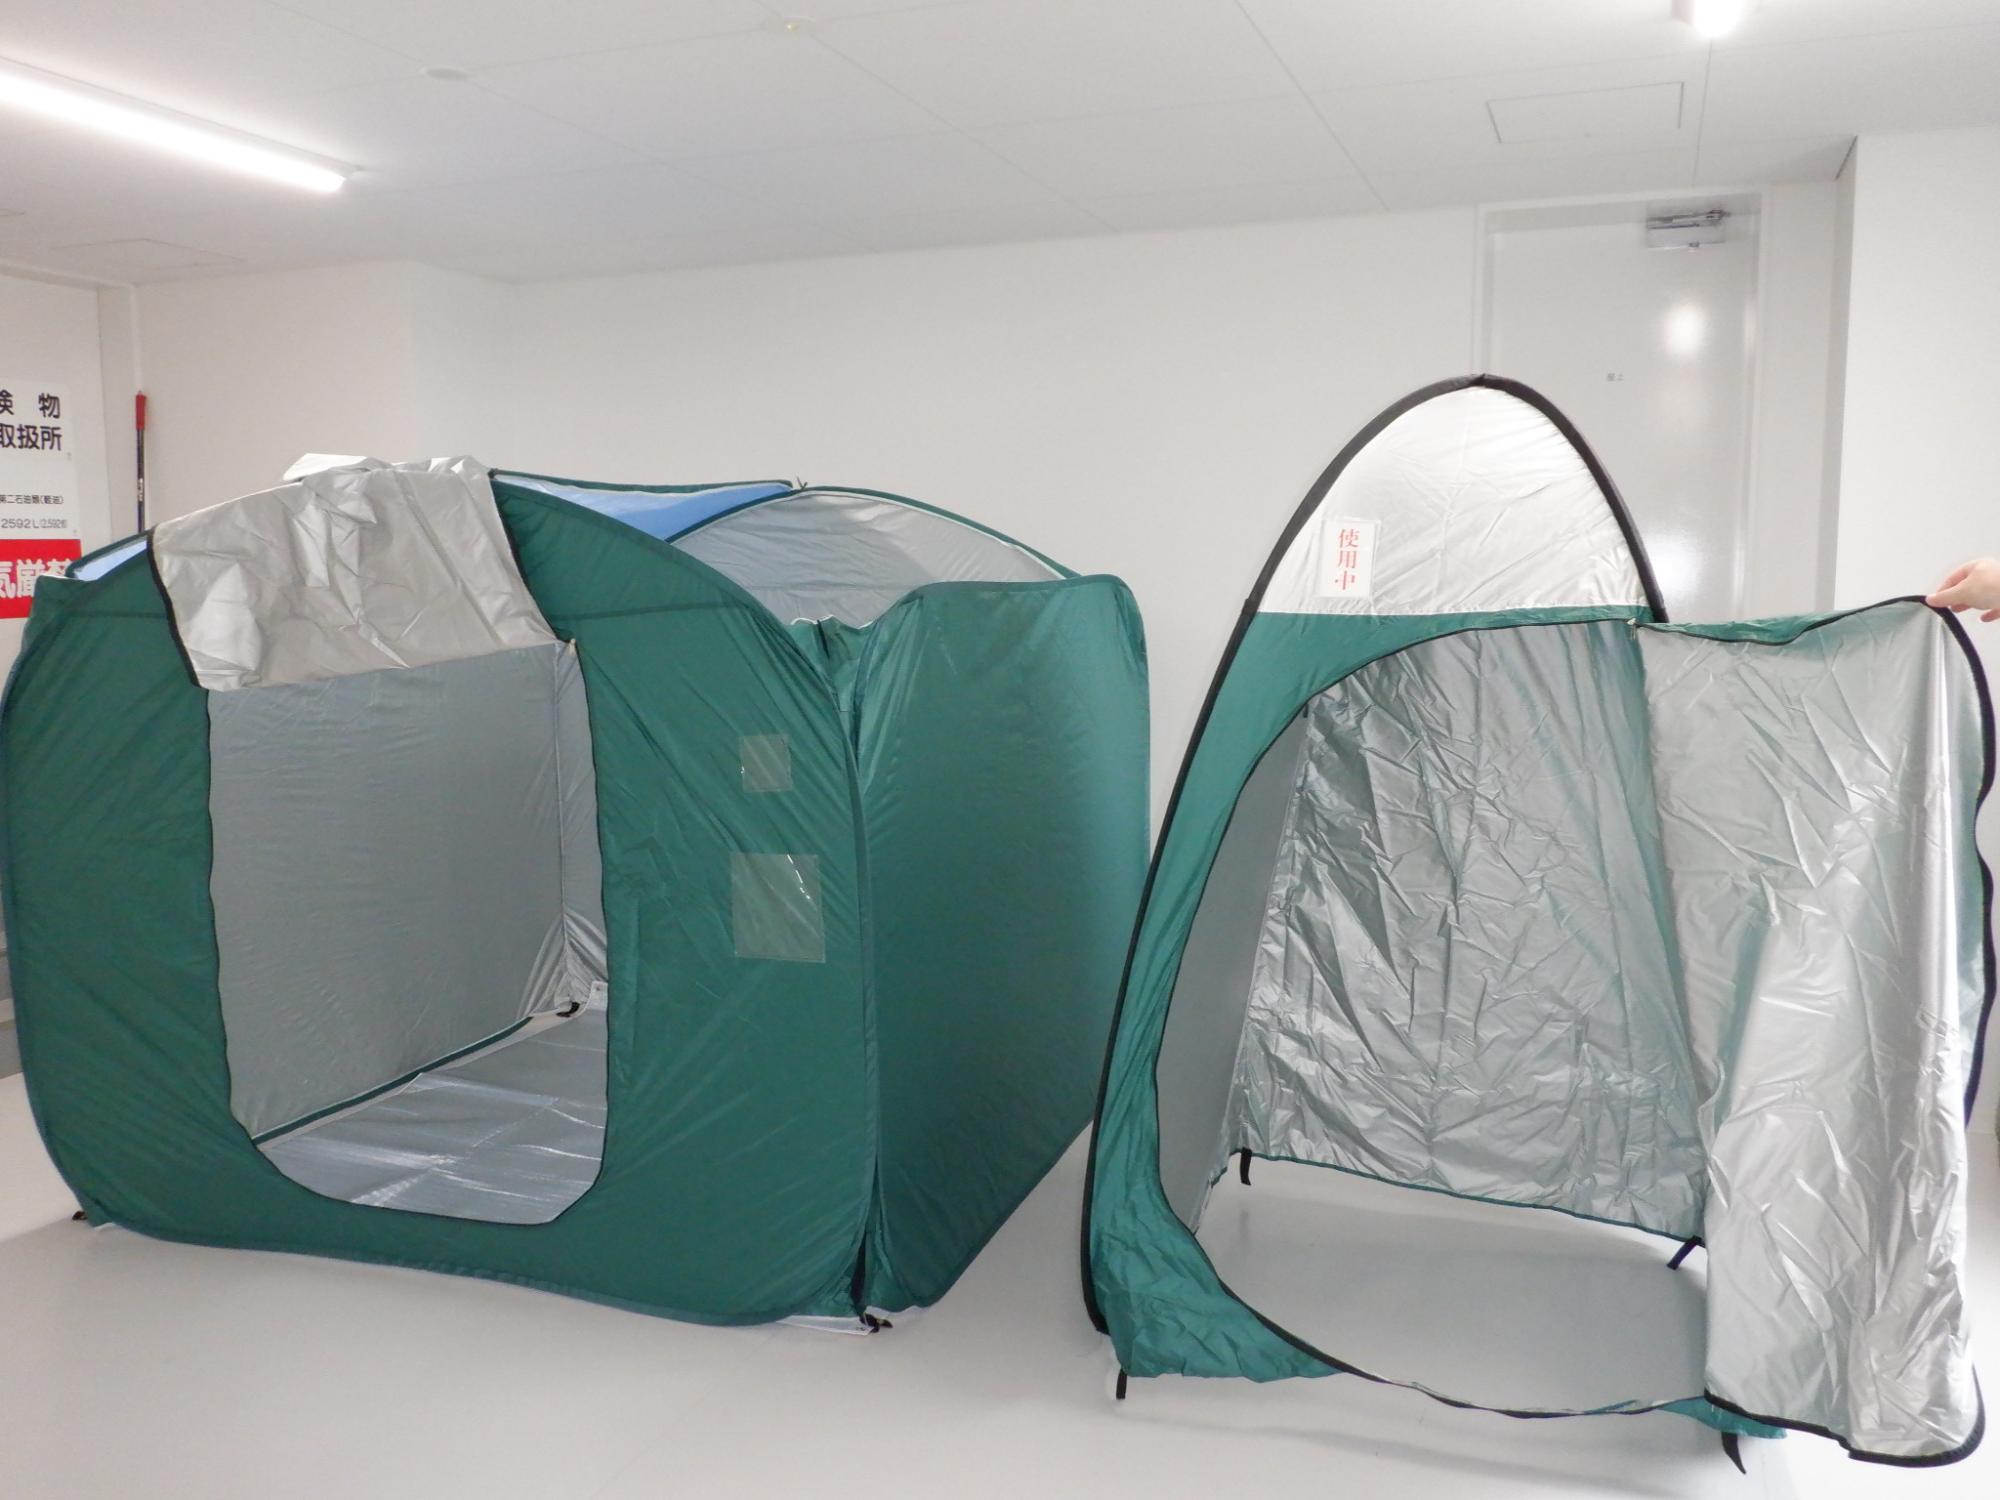 2種類の形で、緑色をしたテントが並べられており、入り口のチャックが開けられ中が見えるように置かれている写真